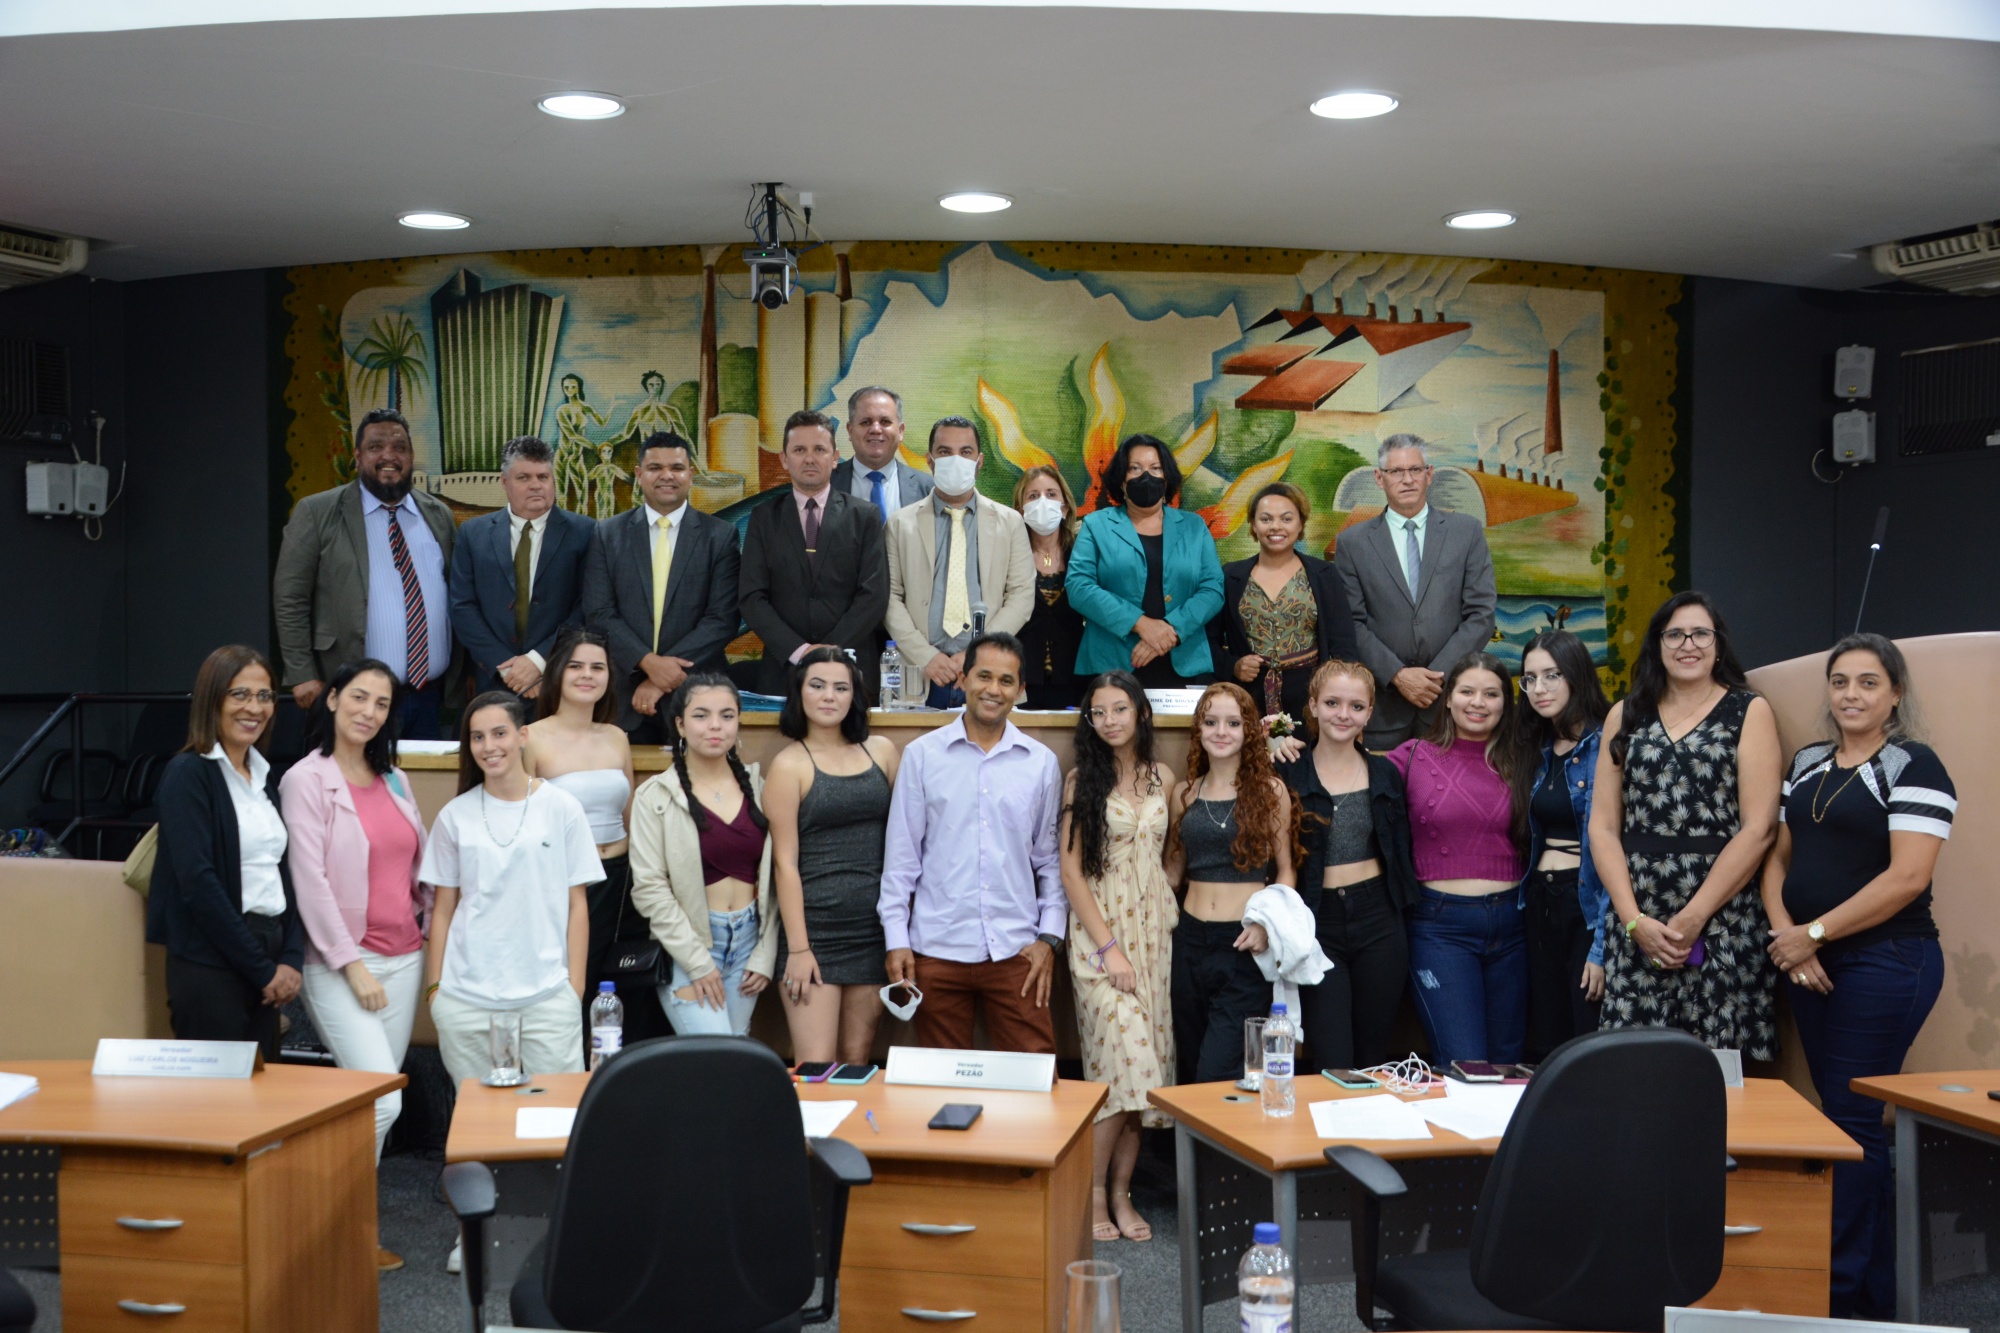 Atletas da equipe de voleibol da Escola Estadual “Prof. João Pessoa Maschietto” recebem voto de congratulações